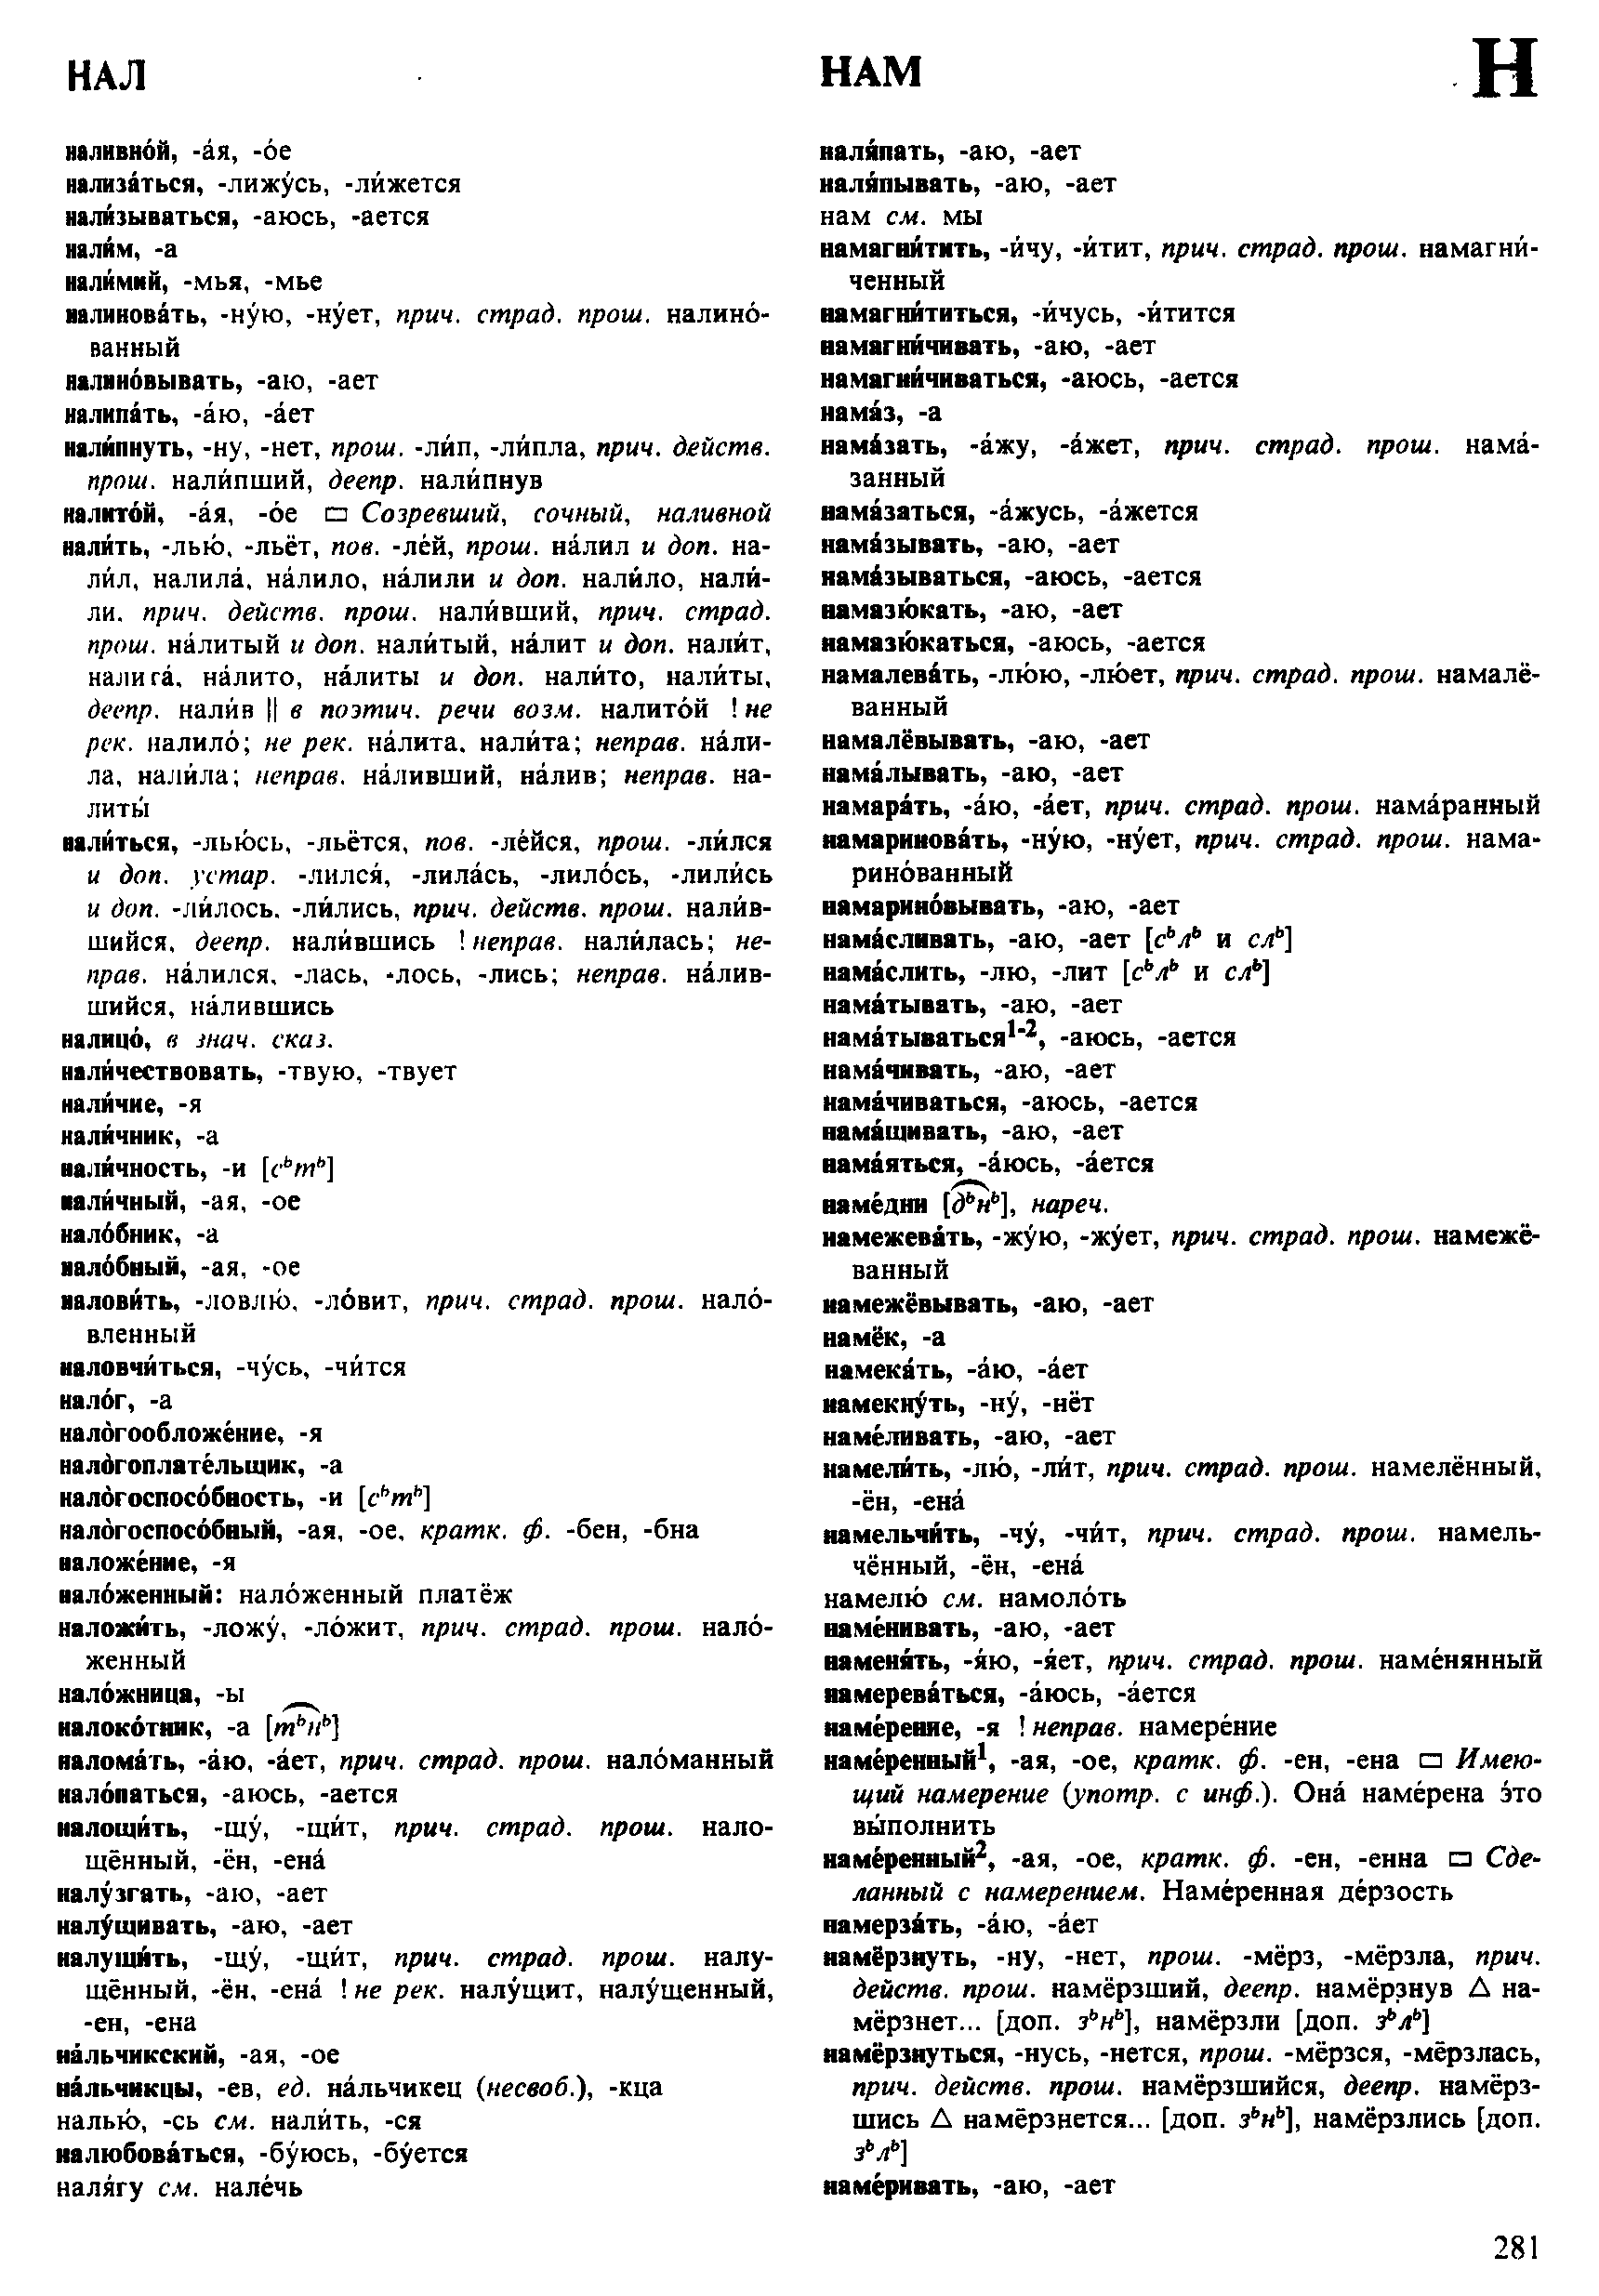 Фотокопия pdf / скан страницы 281 орфоэпического словаря под редакцией Аванесова (4 издание, 1988 год)